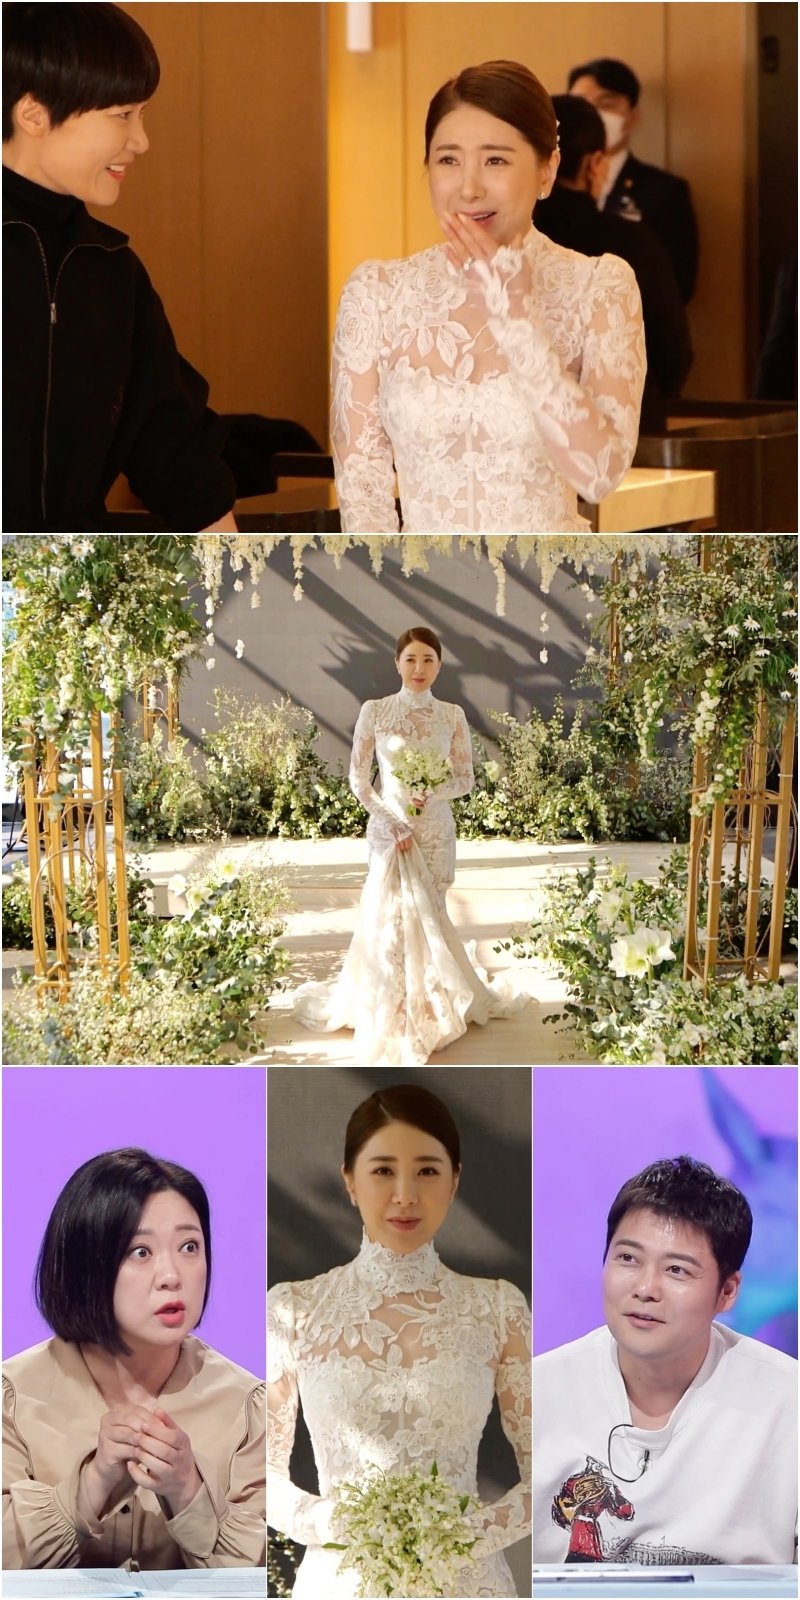 서인영, 로망 담긴 결혼식 공개…"중학교 때부터 드레스 상상"